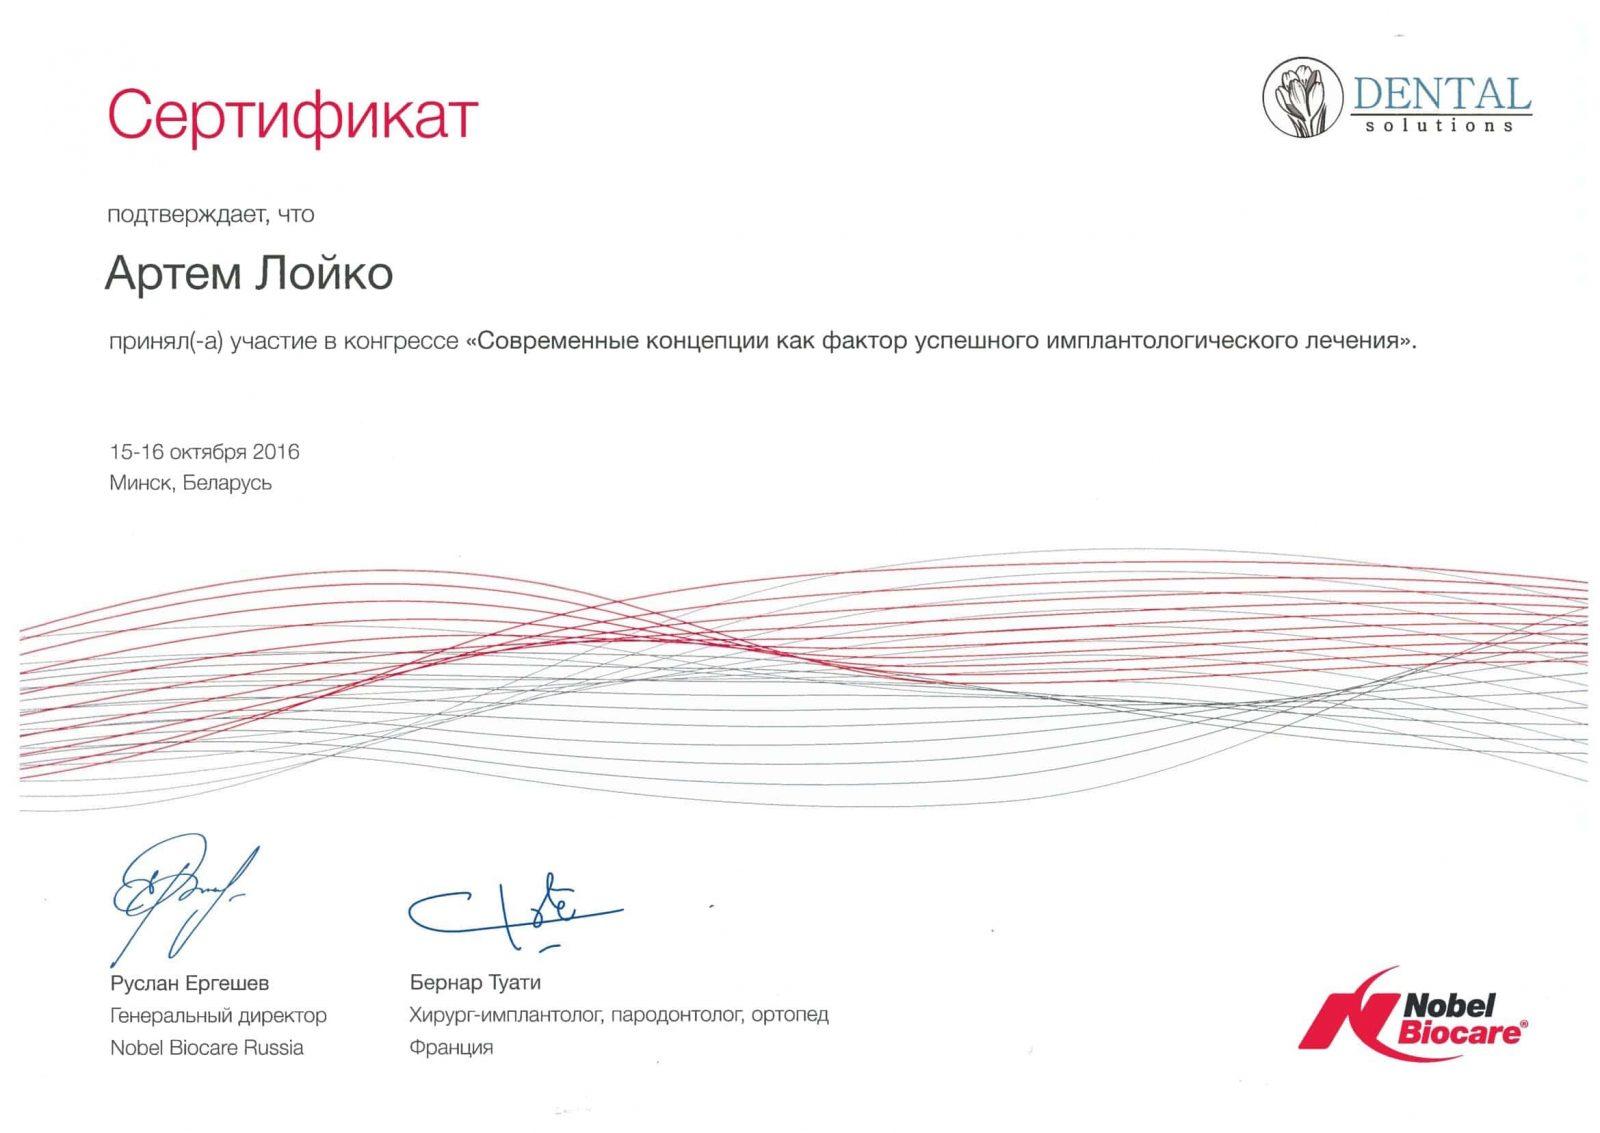 Nach erfolgreichem Abschluss des Kurses wurde Artem Loiko ein Nobel Biocare Zertifikat ausgestellt. Moderne Konzepte als Faktor für eine erfolgreiche Implantatbehandlung.